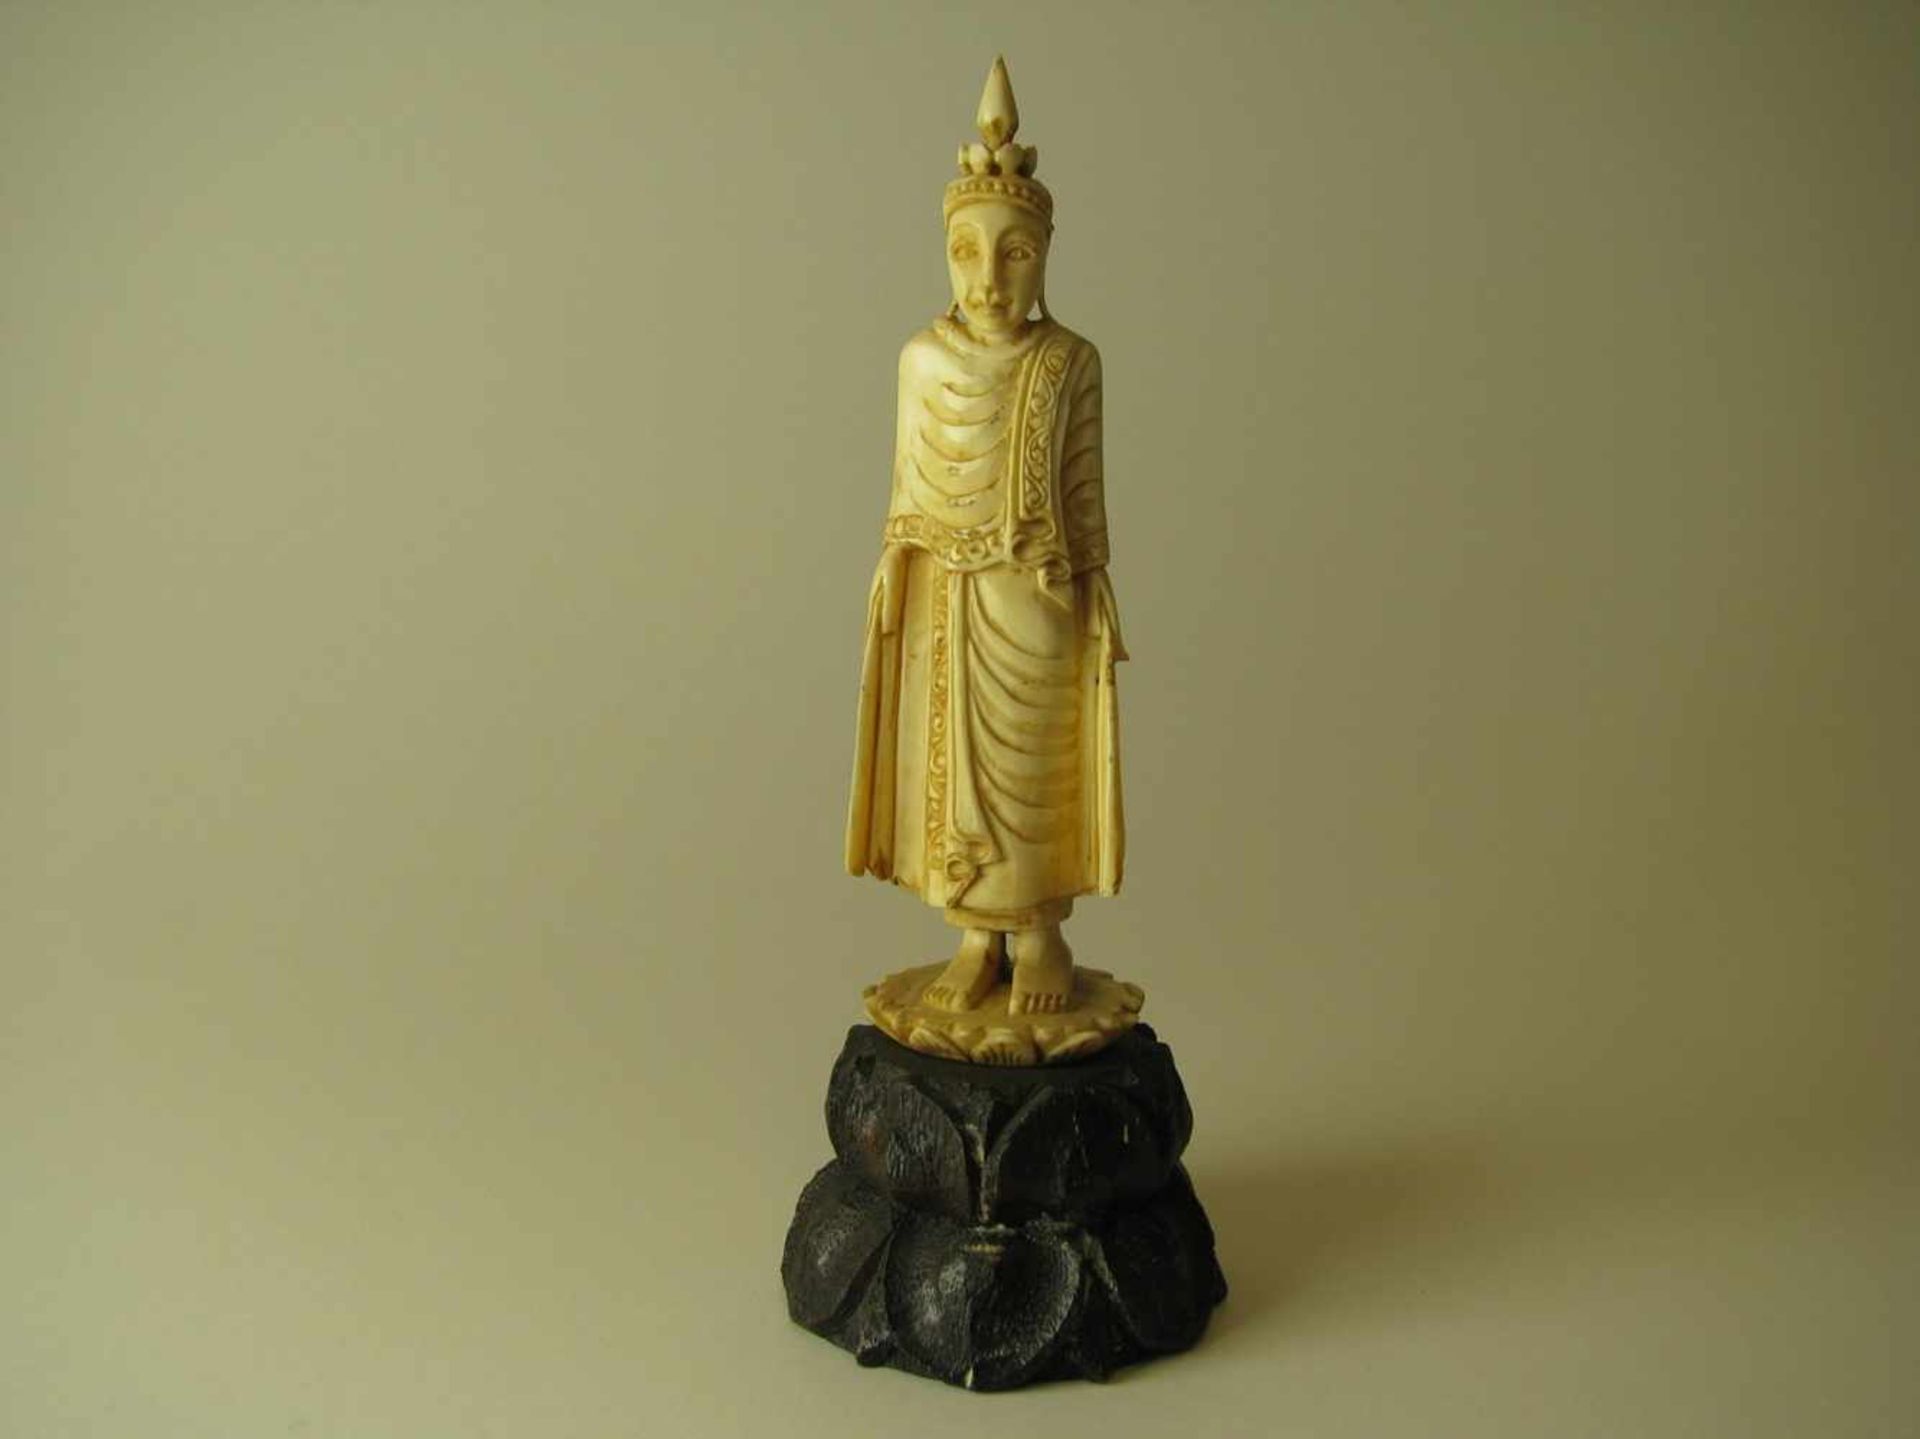 Buddhafigur, Südostasien, um 1900, Elfenbein beschnitzt, Holzsockel, h 10,5 cm, d 3,5 cm.<